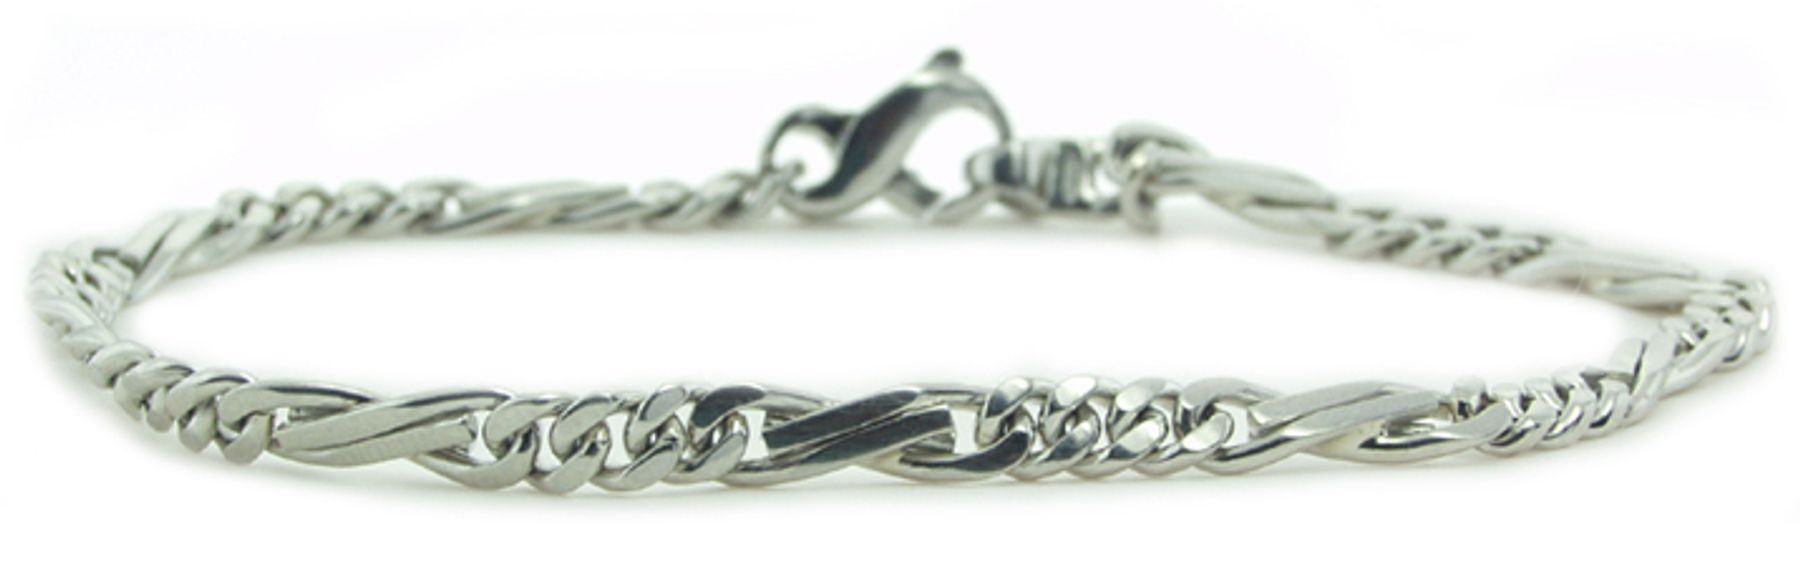 Platinum Link Chains Bracelets. View Bracelets and Chains.